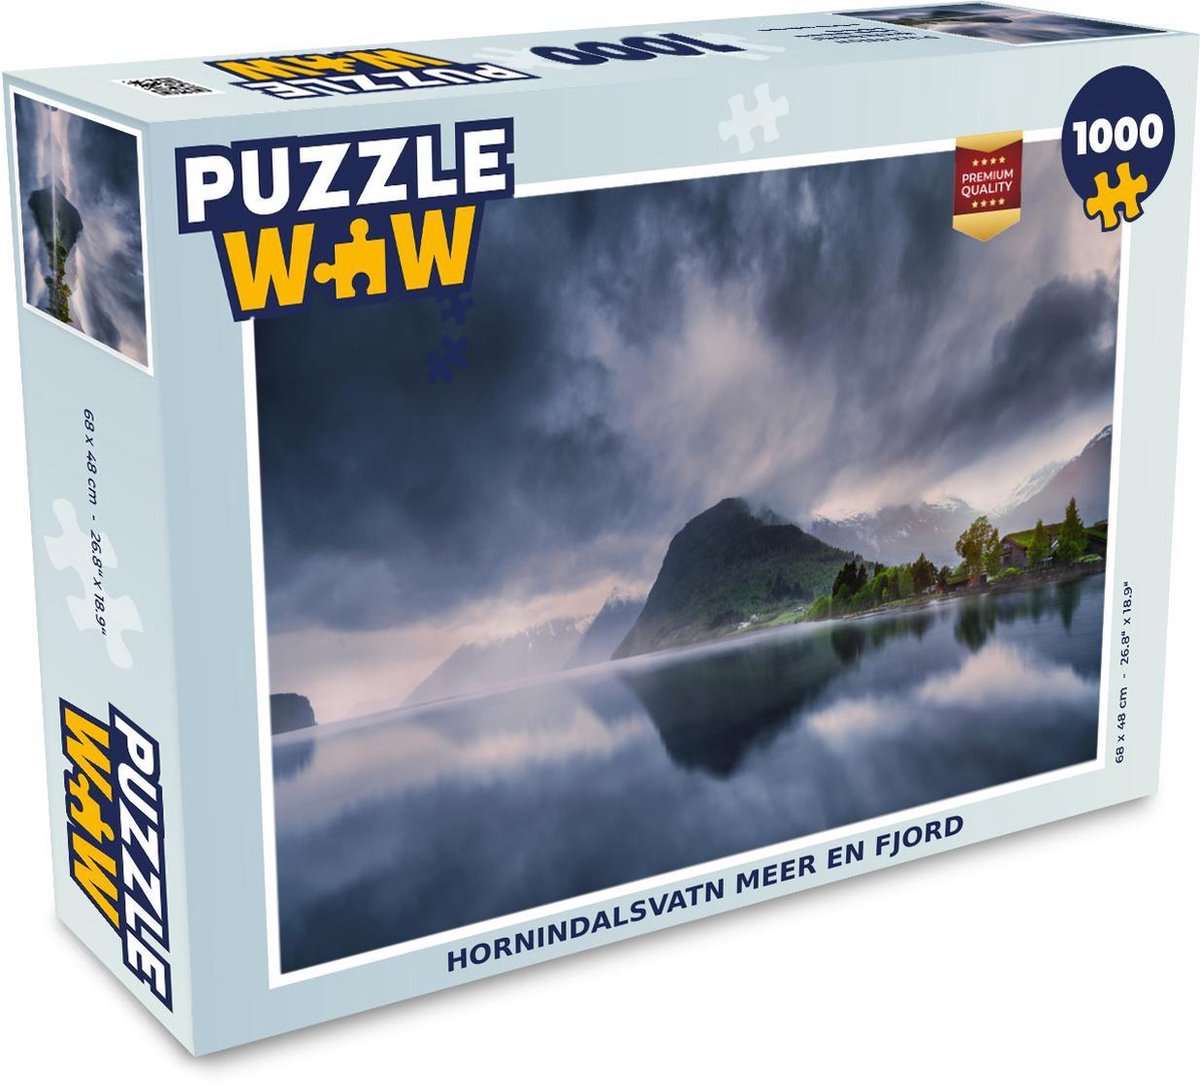 Afbeelding van product PuzzleWow  Puzzel Hornindalsvatn meer en fjord - Legpuzzel - Puzzel 1000 stukjes volwassenen